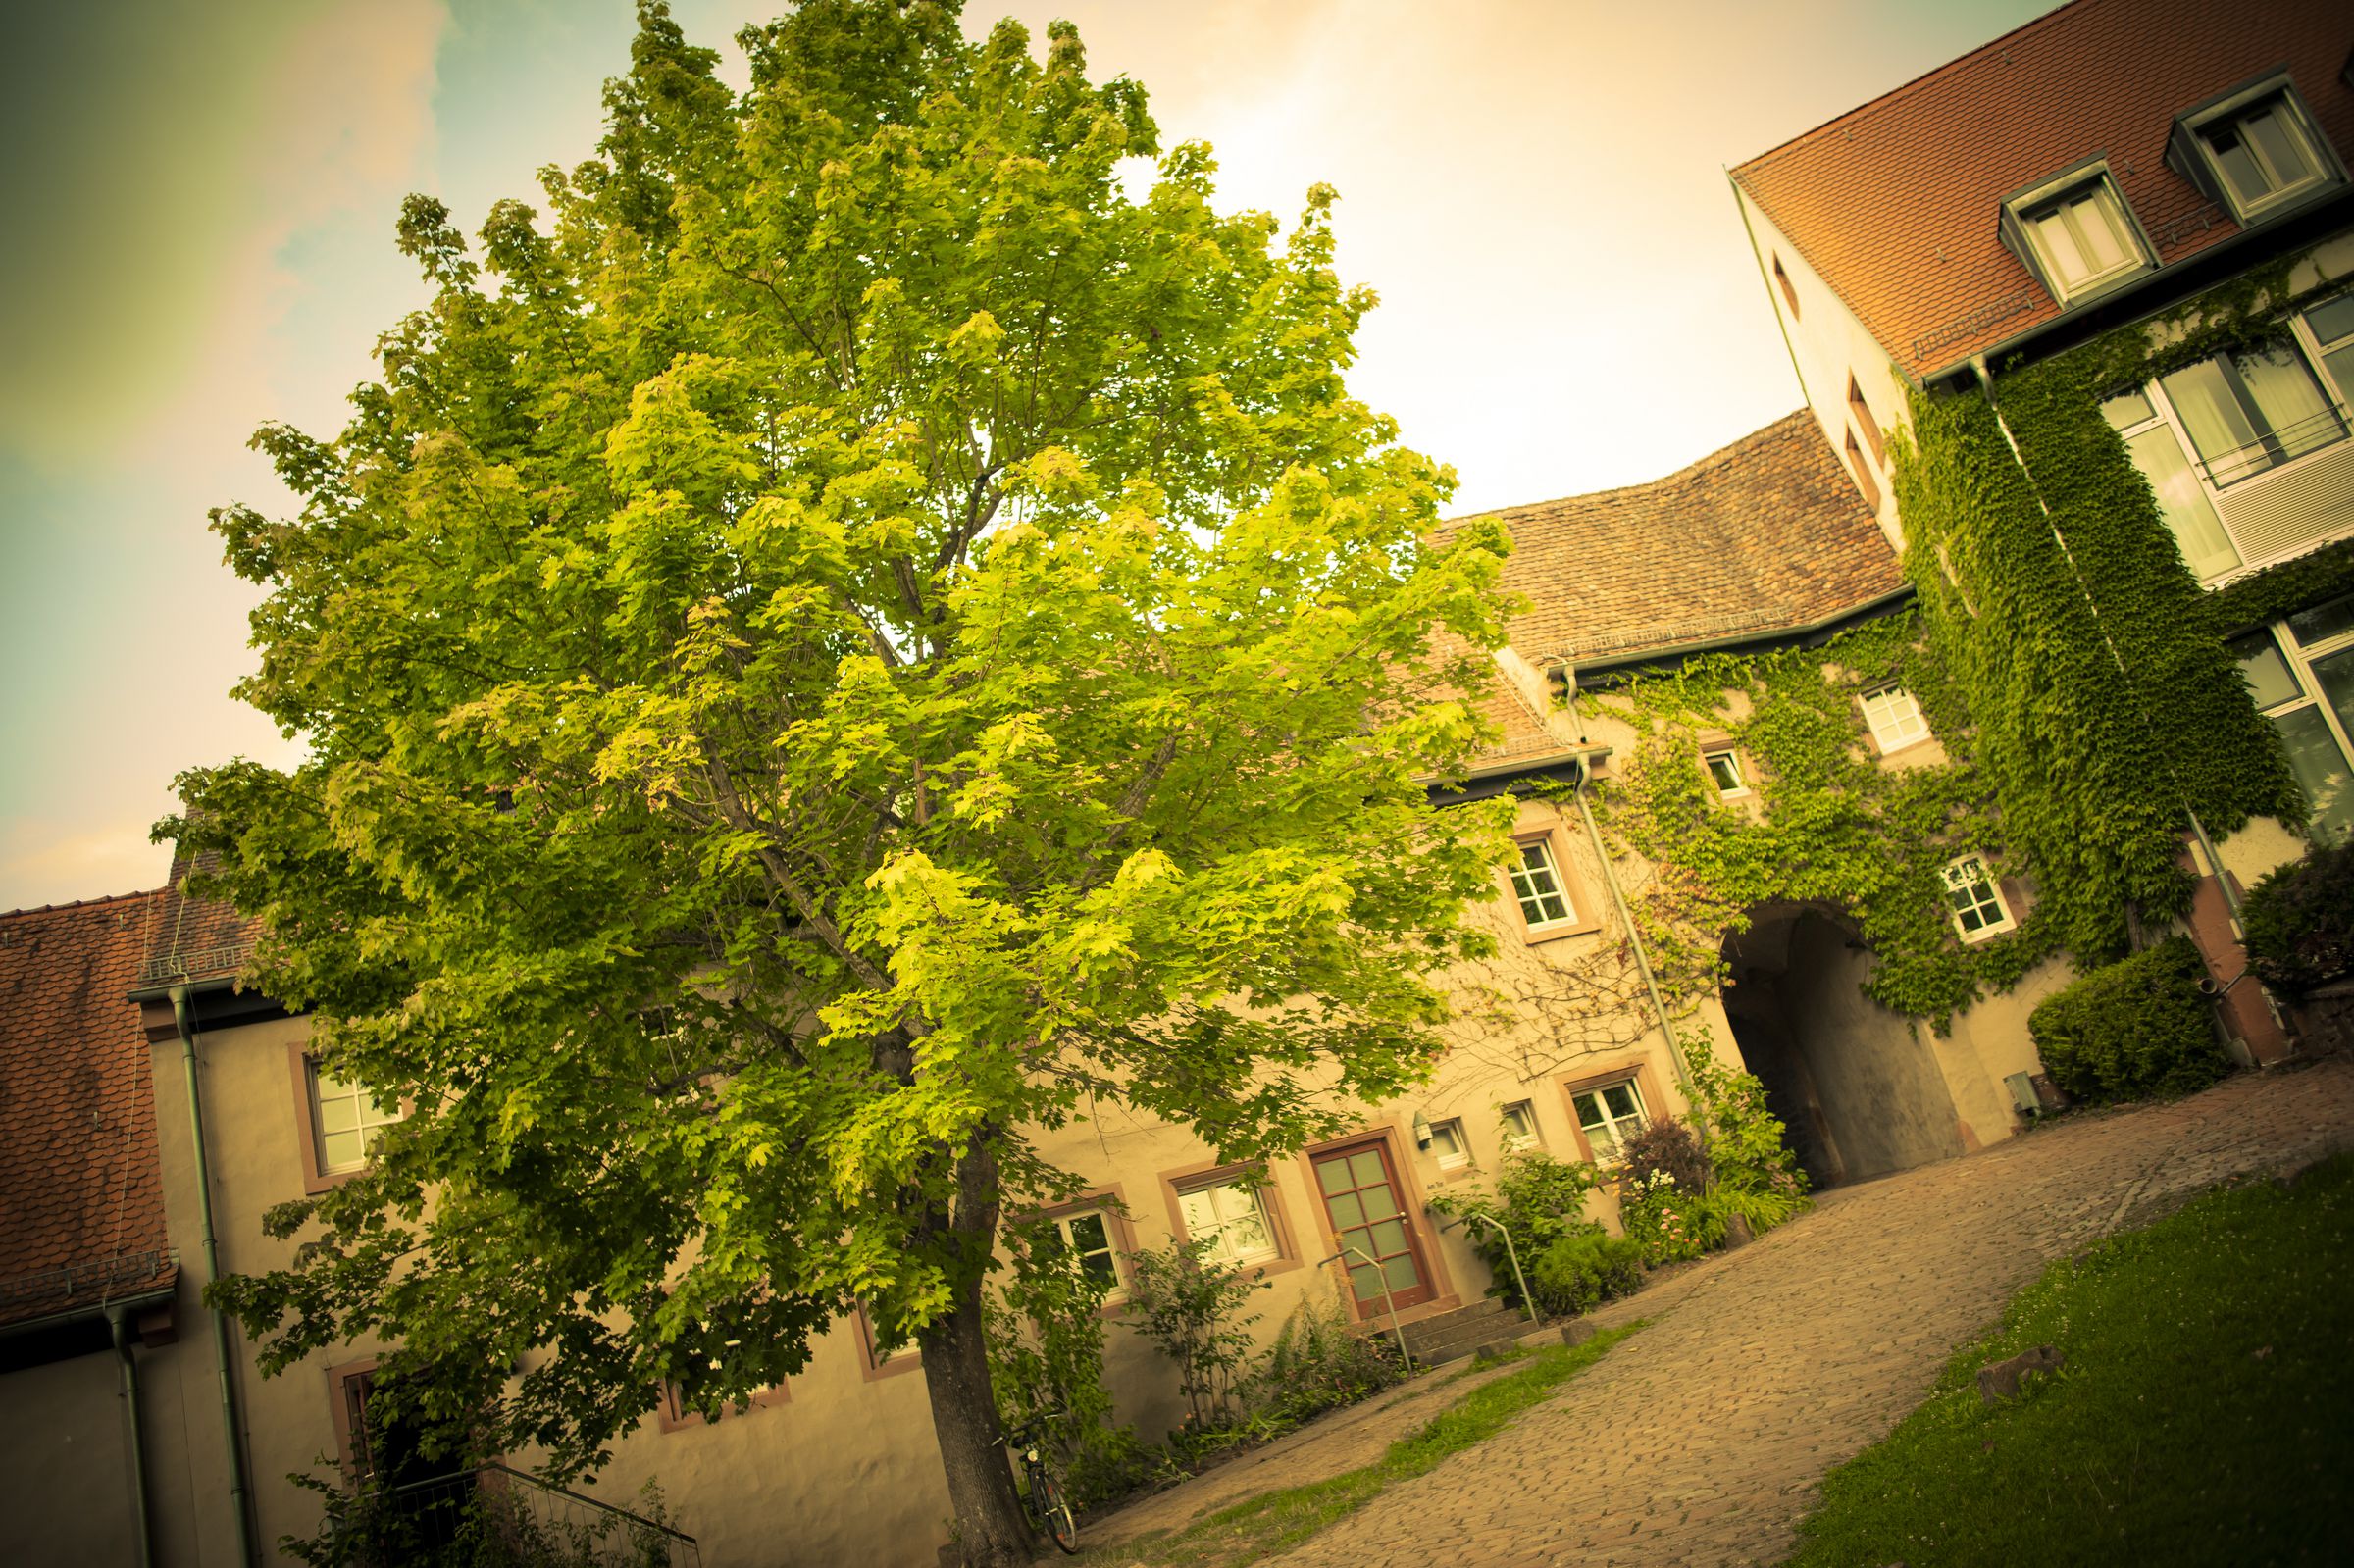 Eingang der Burg Rothenfels mit einem großen Baum im Vordergrund. Farben stark übersättigt.